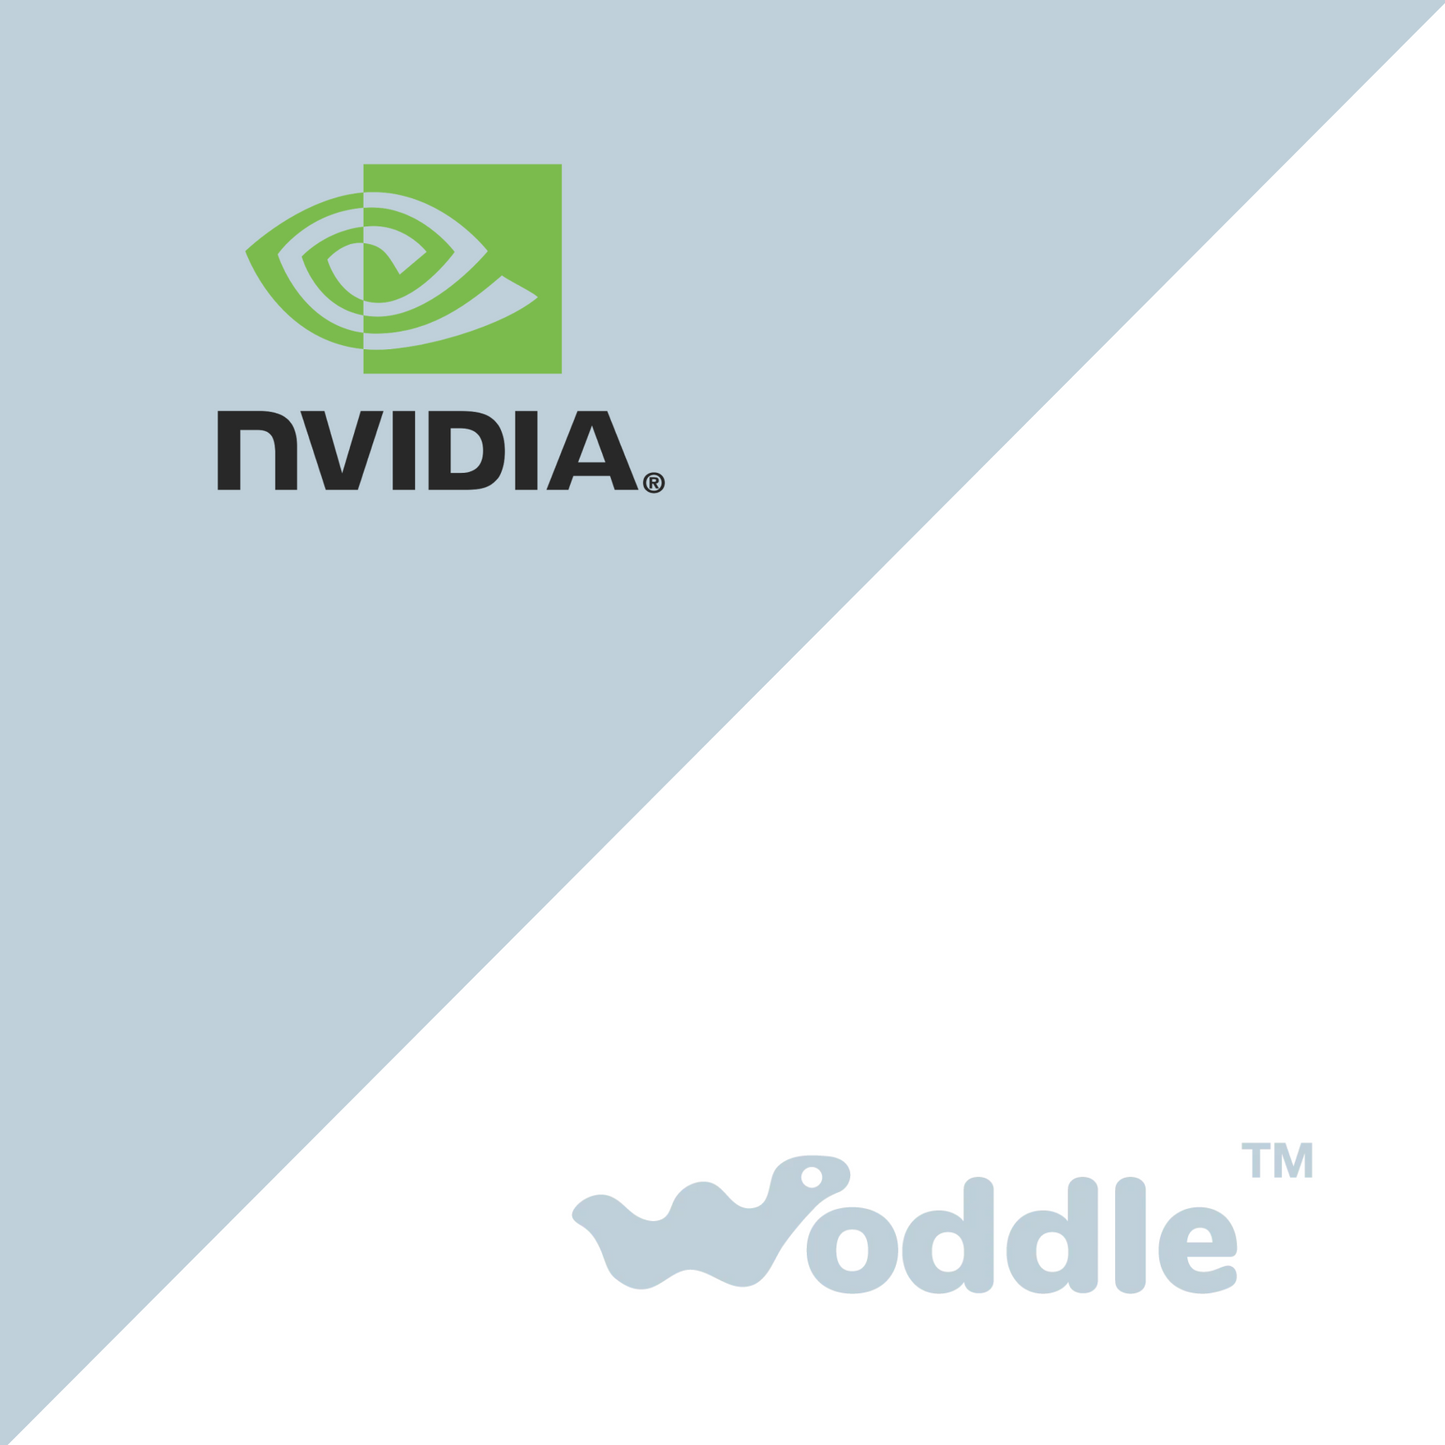 Woddle: Illuminating the Future with NVIDIA Inception